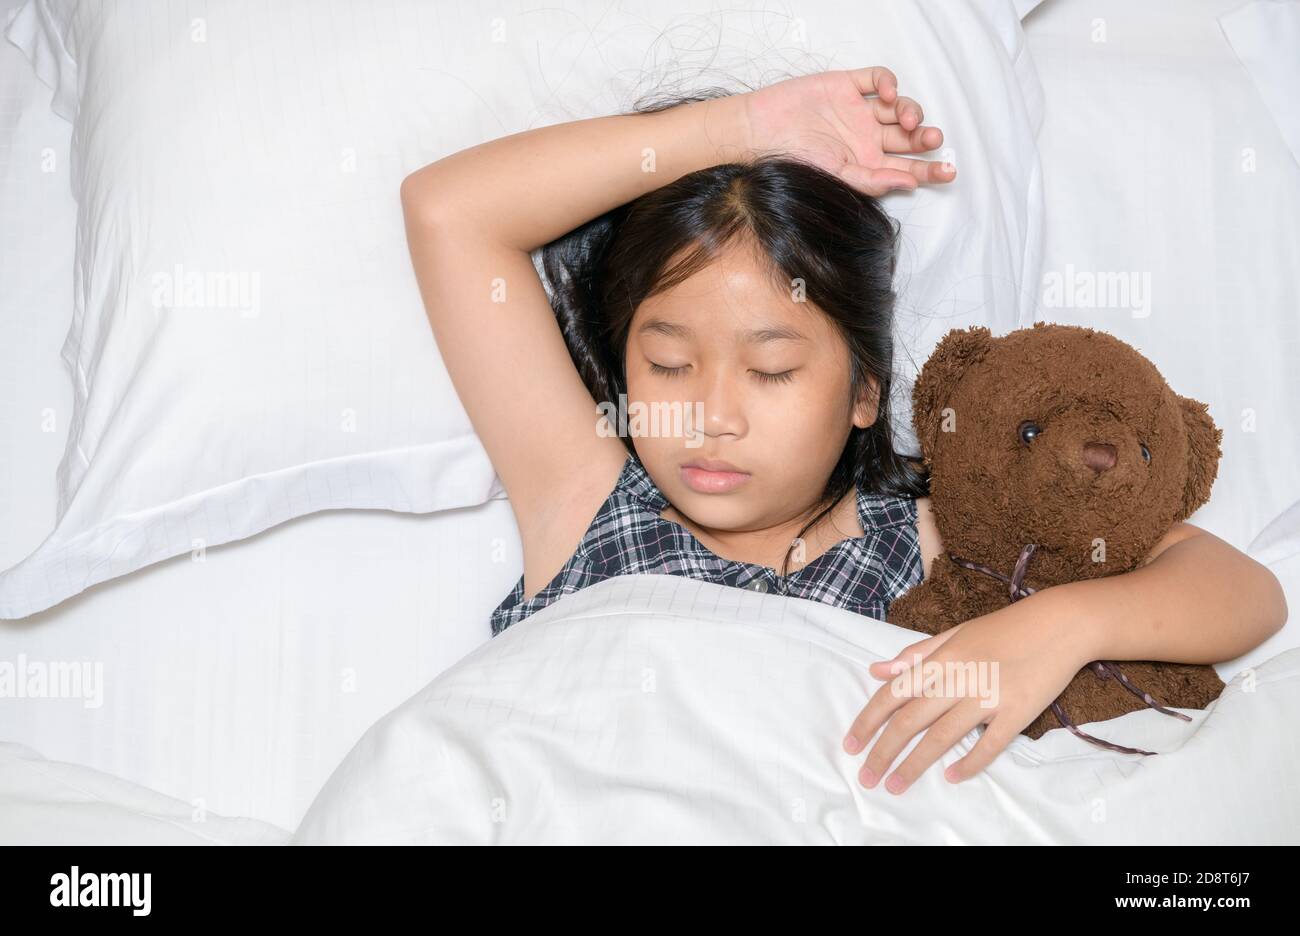 Nettes kleines Mädchen umarmt Teddybär schlafen lag im Bett, glücklich  kleines Kind umarmen Spielzeug schlafen auf weichen Kissen weißen Laken mit  Decke bedeckt Stockfotografie - Alamy